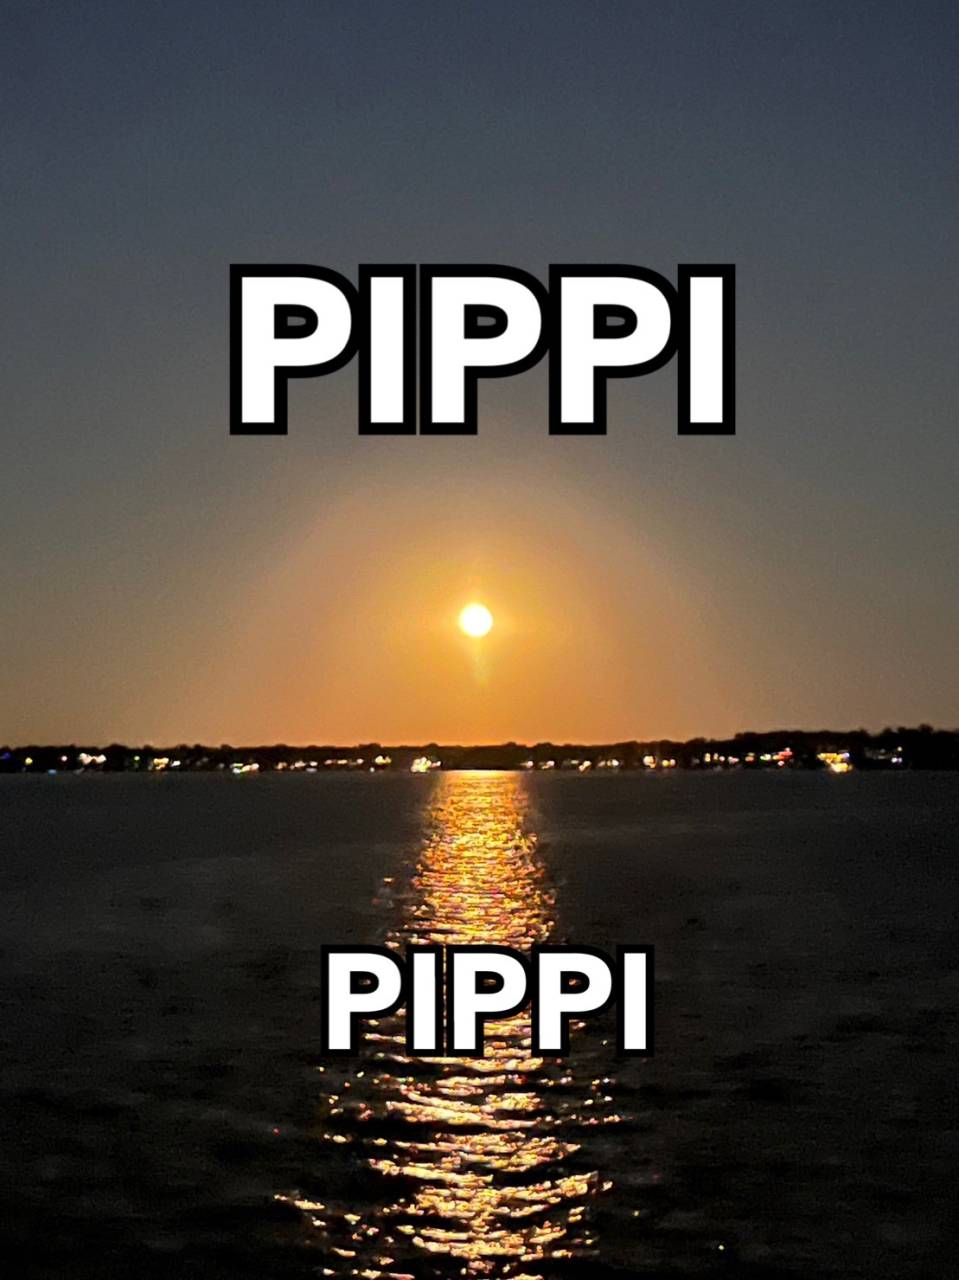 PiPPI